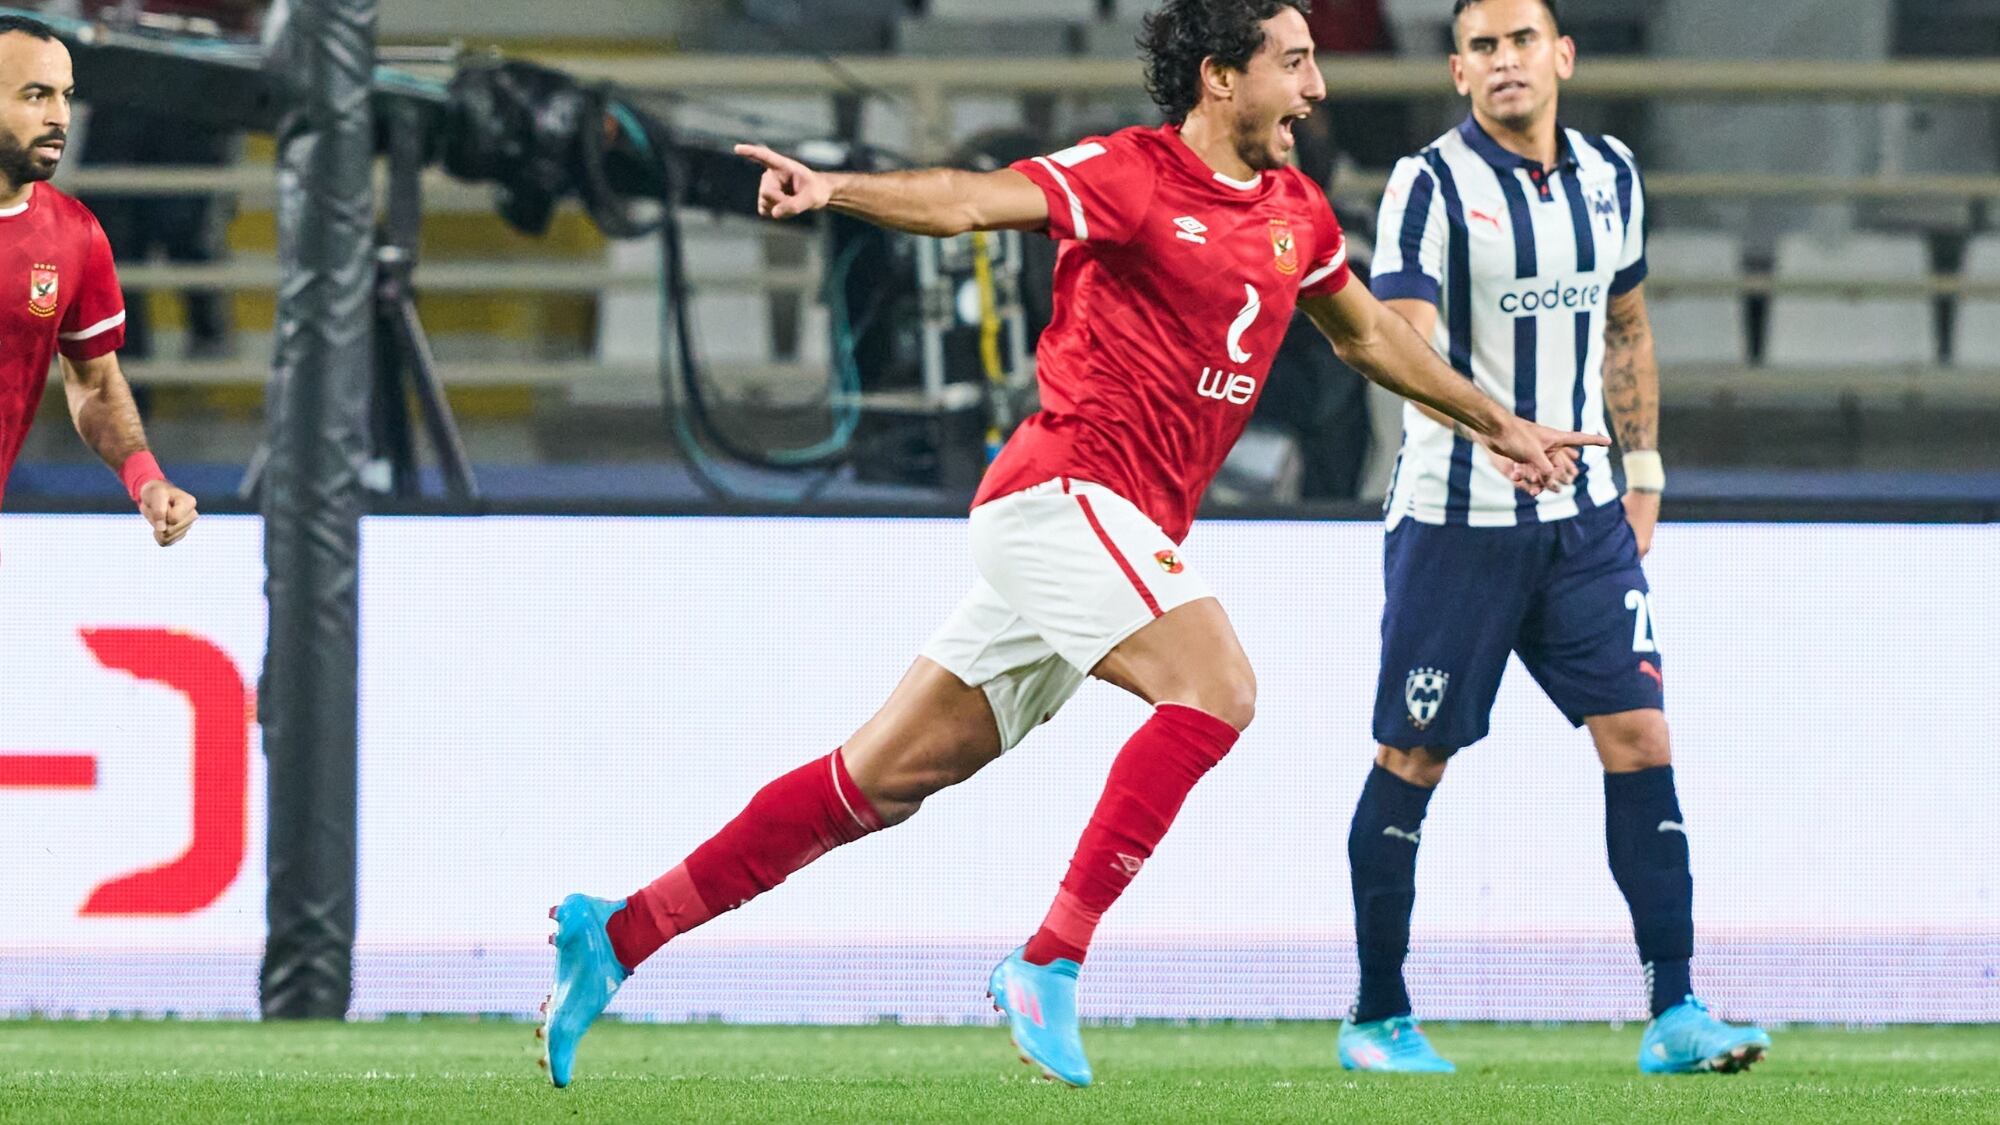 Monterrey vs Al-Ahly Mundial de Clubes 2021: resumen, resultado y goles del partido